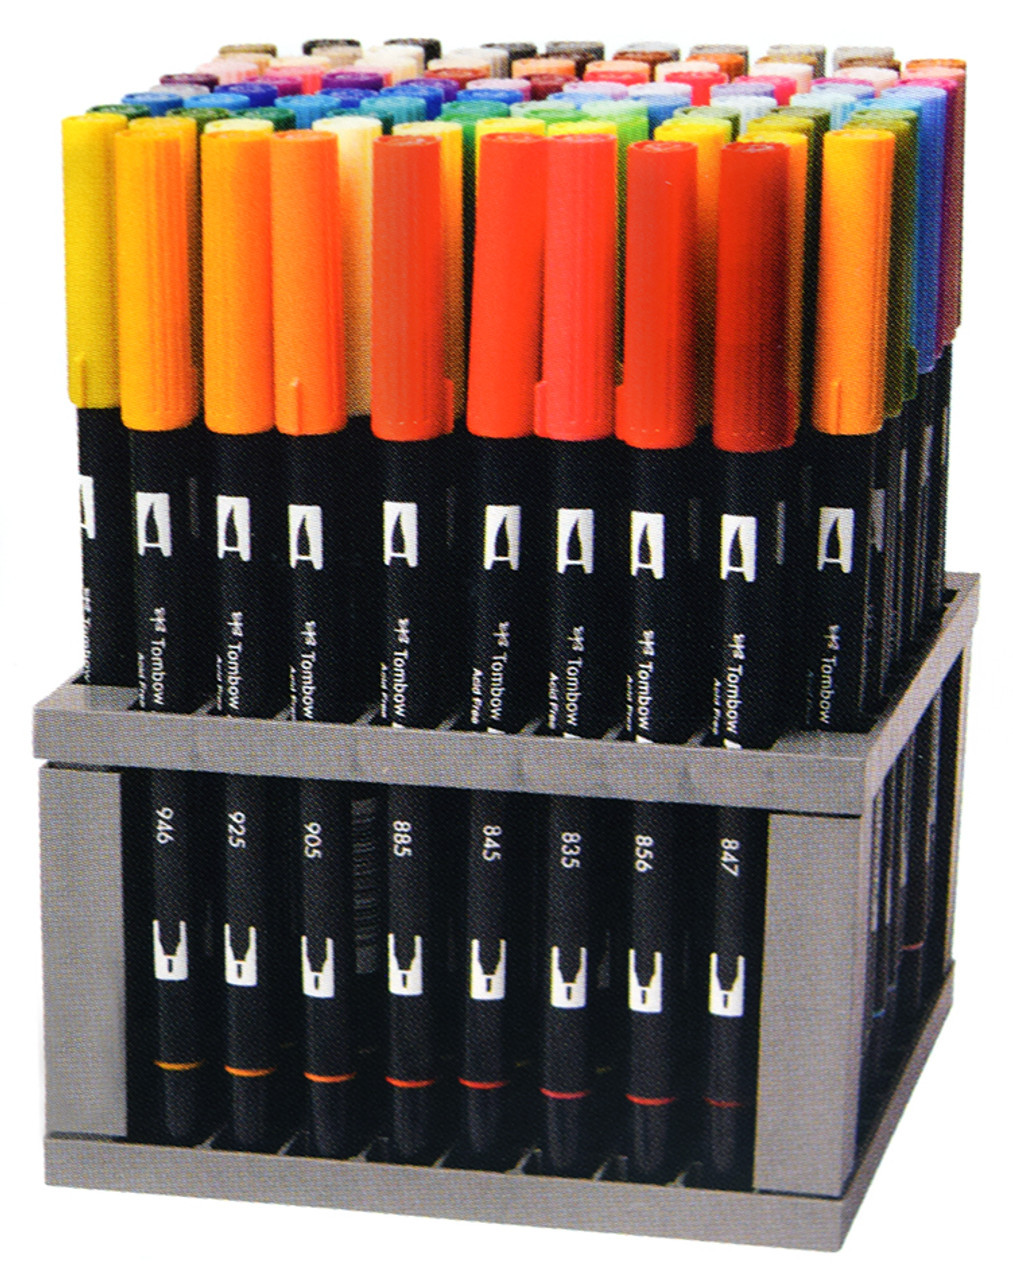 Tombow Dual Brush Pen Set of 6- Purple Blendables